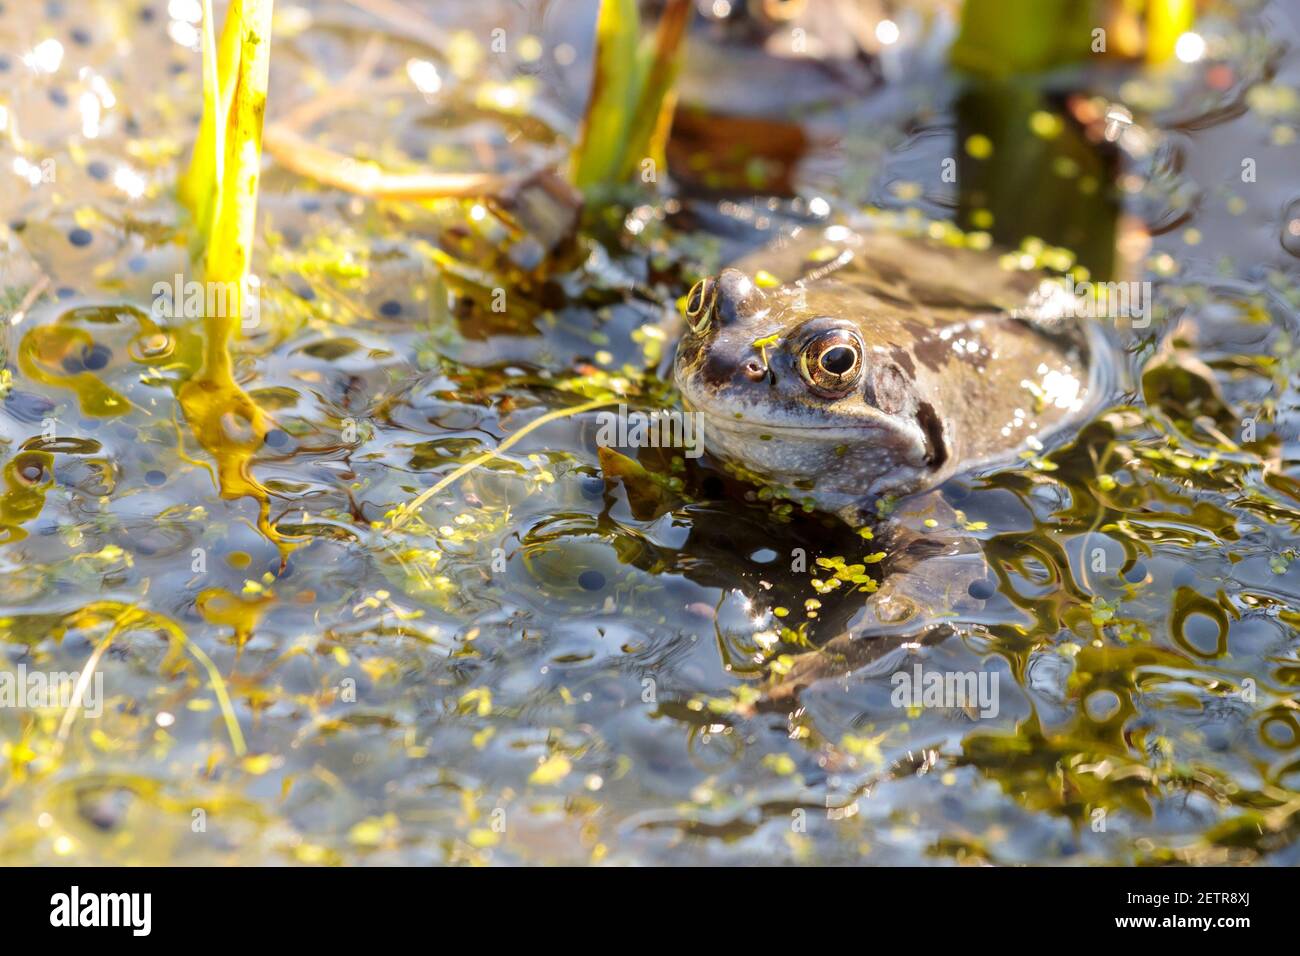 Rana común (Rana temporaria) flotando en un estanque de jardín y rodeado de frogspawn, Sussex, Inglaterra, Reino Unido Foto de stock